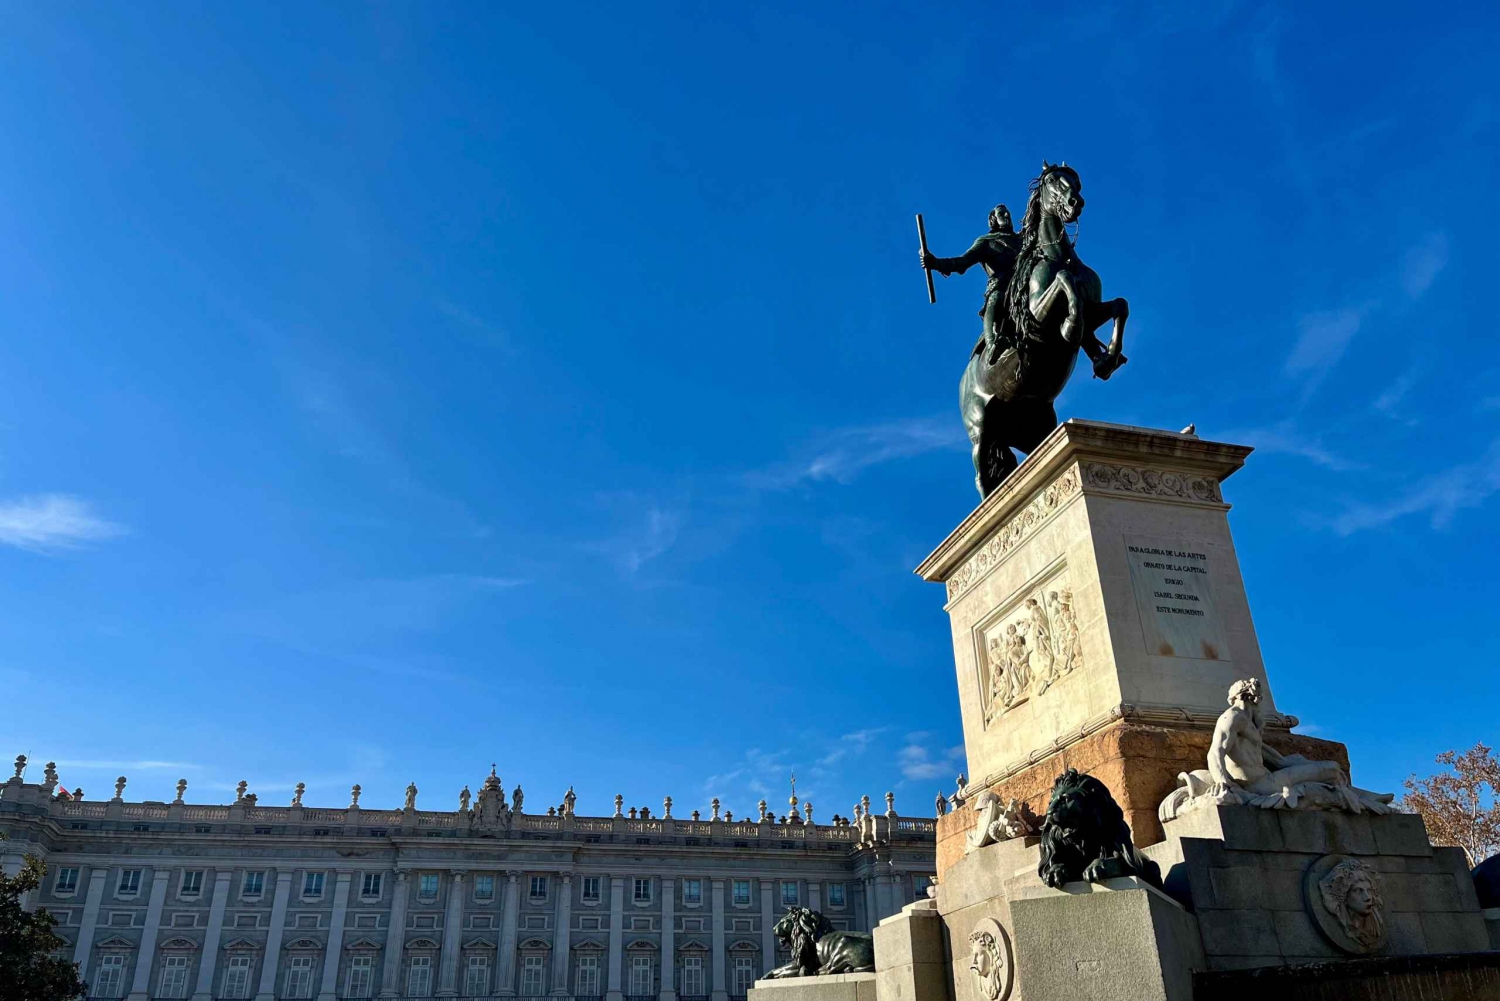 Oplev Madrid ved at søge efter Filip IV's skat